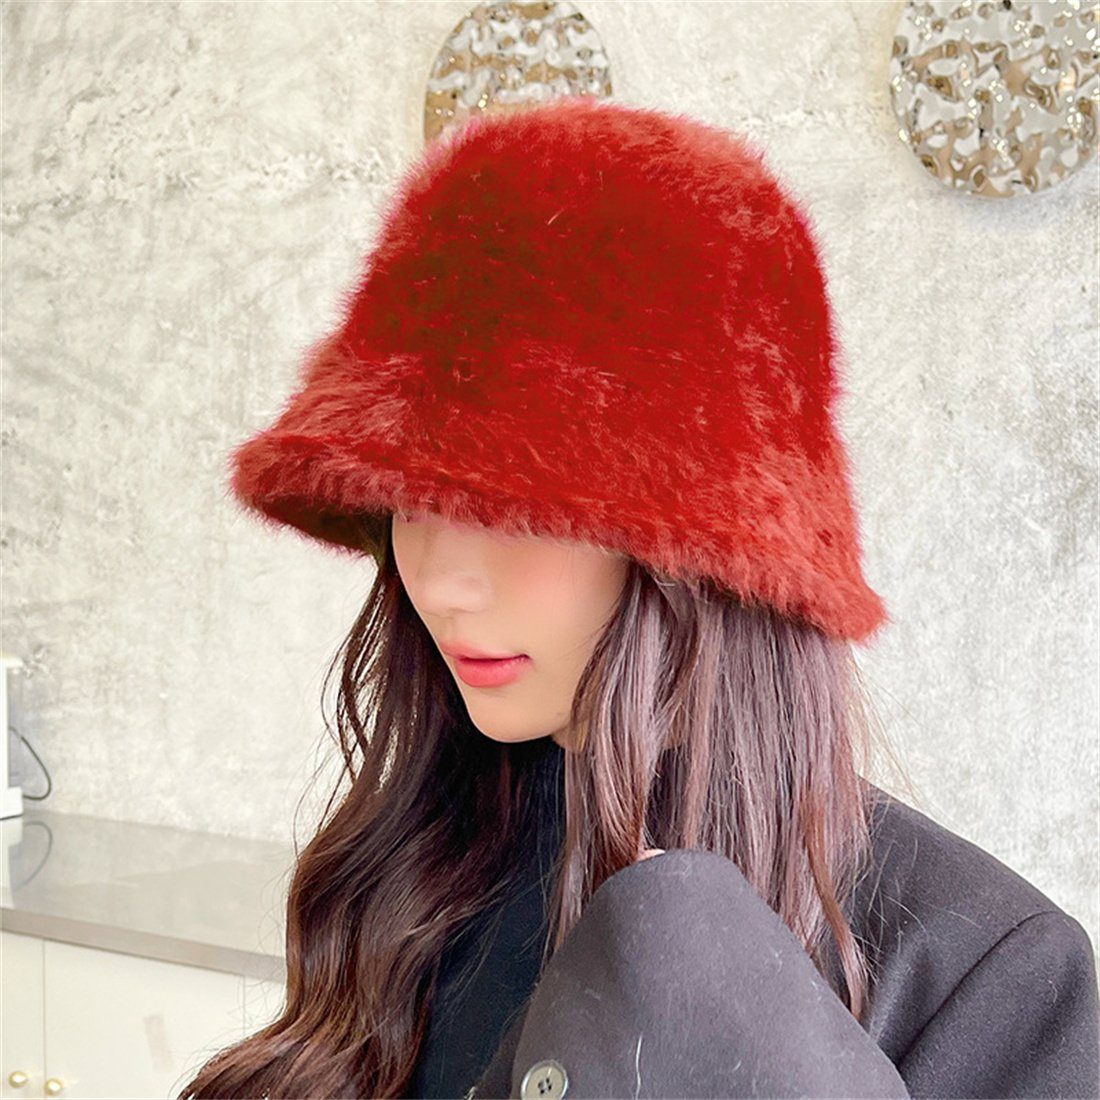 Frauen Winter Fischerhut Rot warme Mode DÖRÖY Hut, Plüsch Mütze Fischer Kuppel verdickt